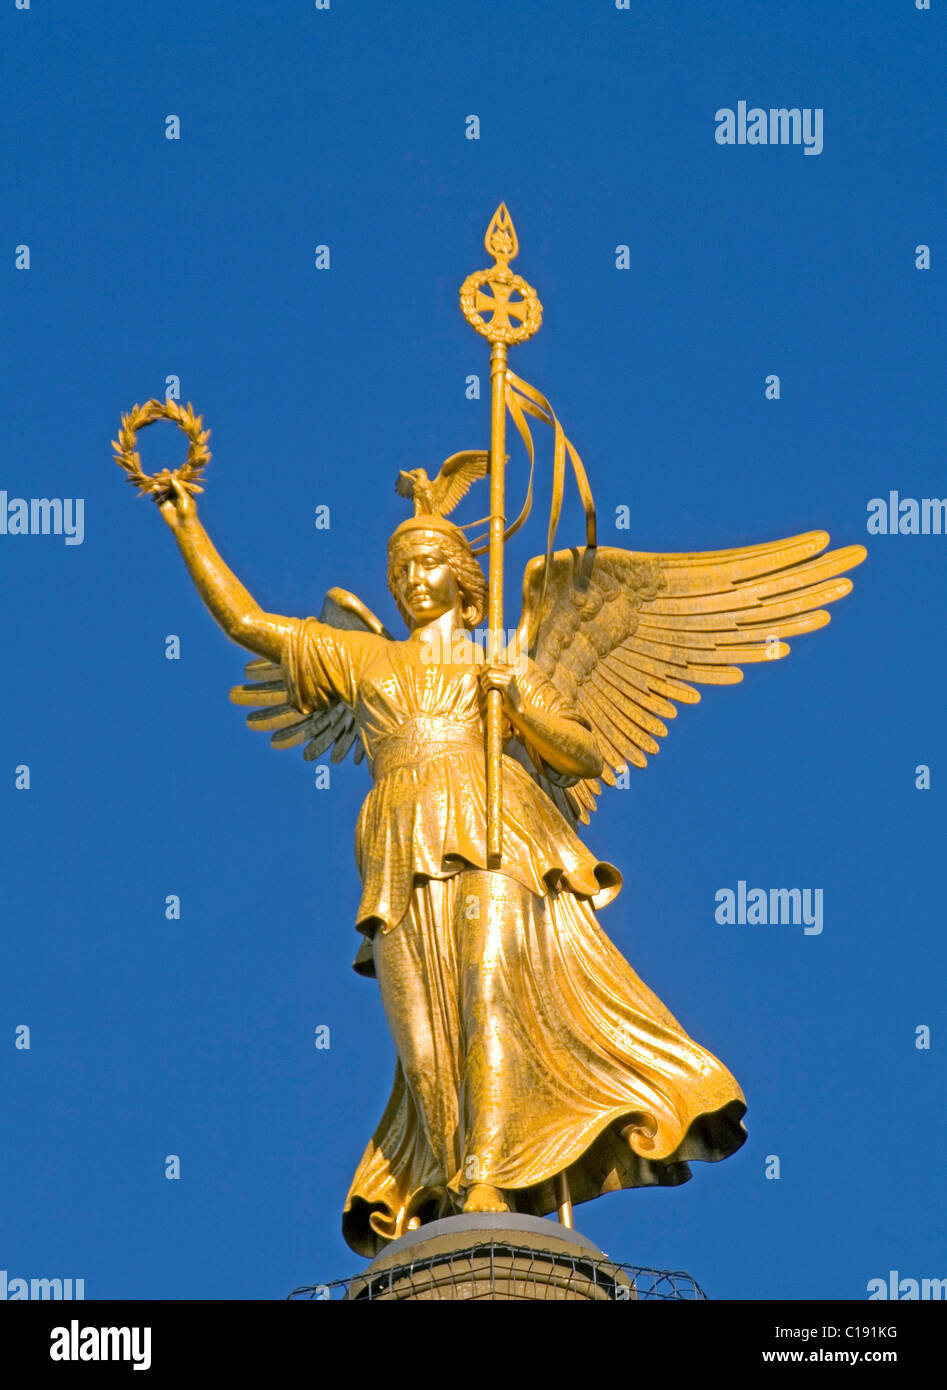 Goldelse, escultura de bronce en la parte superior de la columna de la victoria, Siegessaeule, Berlin Mitte, Berlin, Alemania, Europa Foto de stock